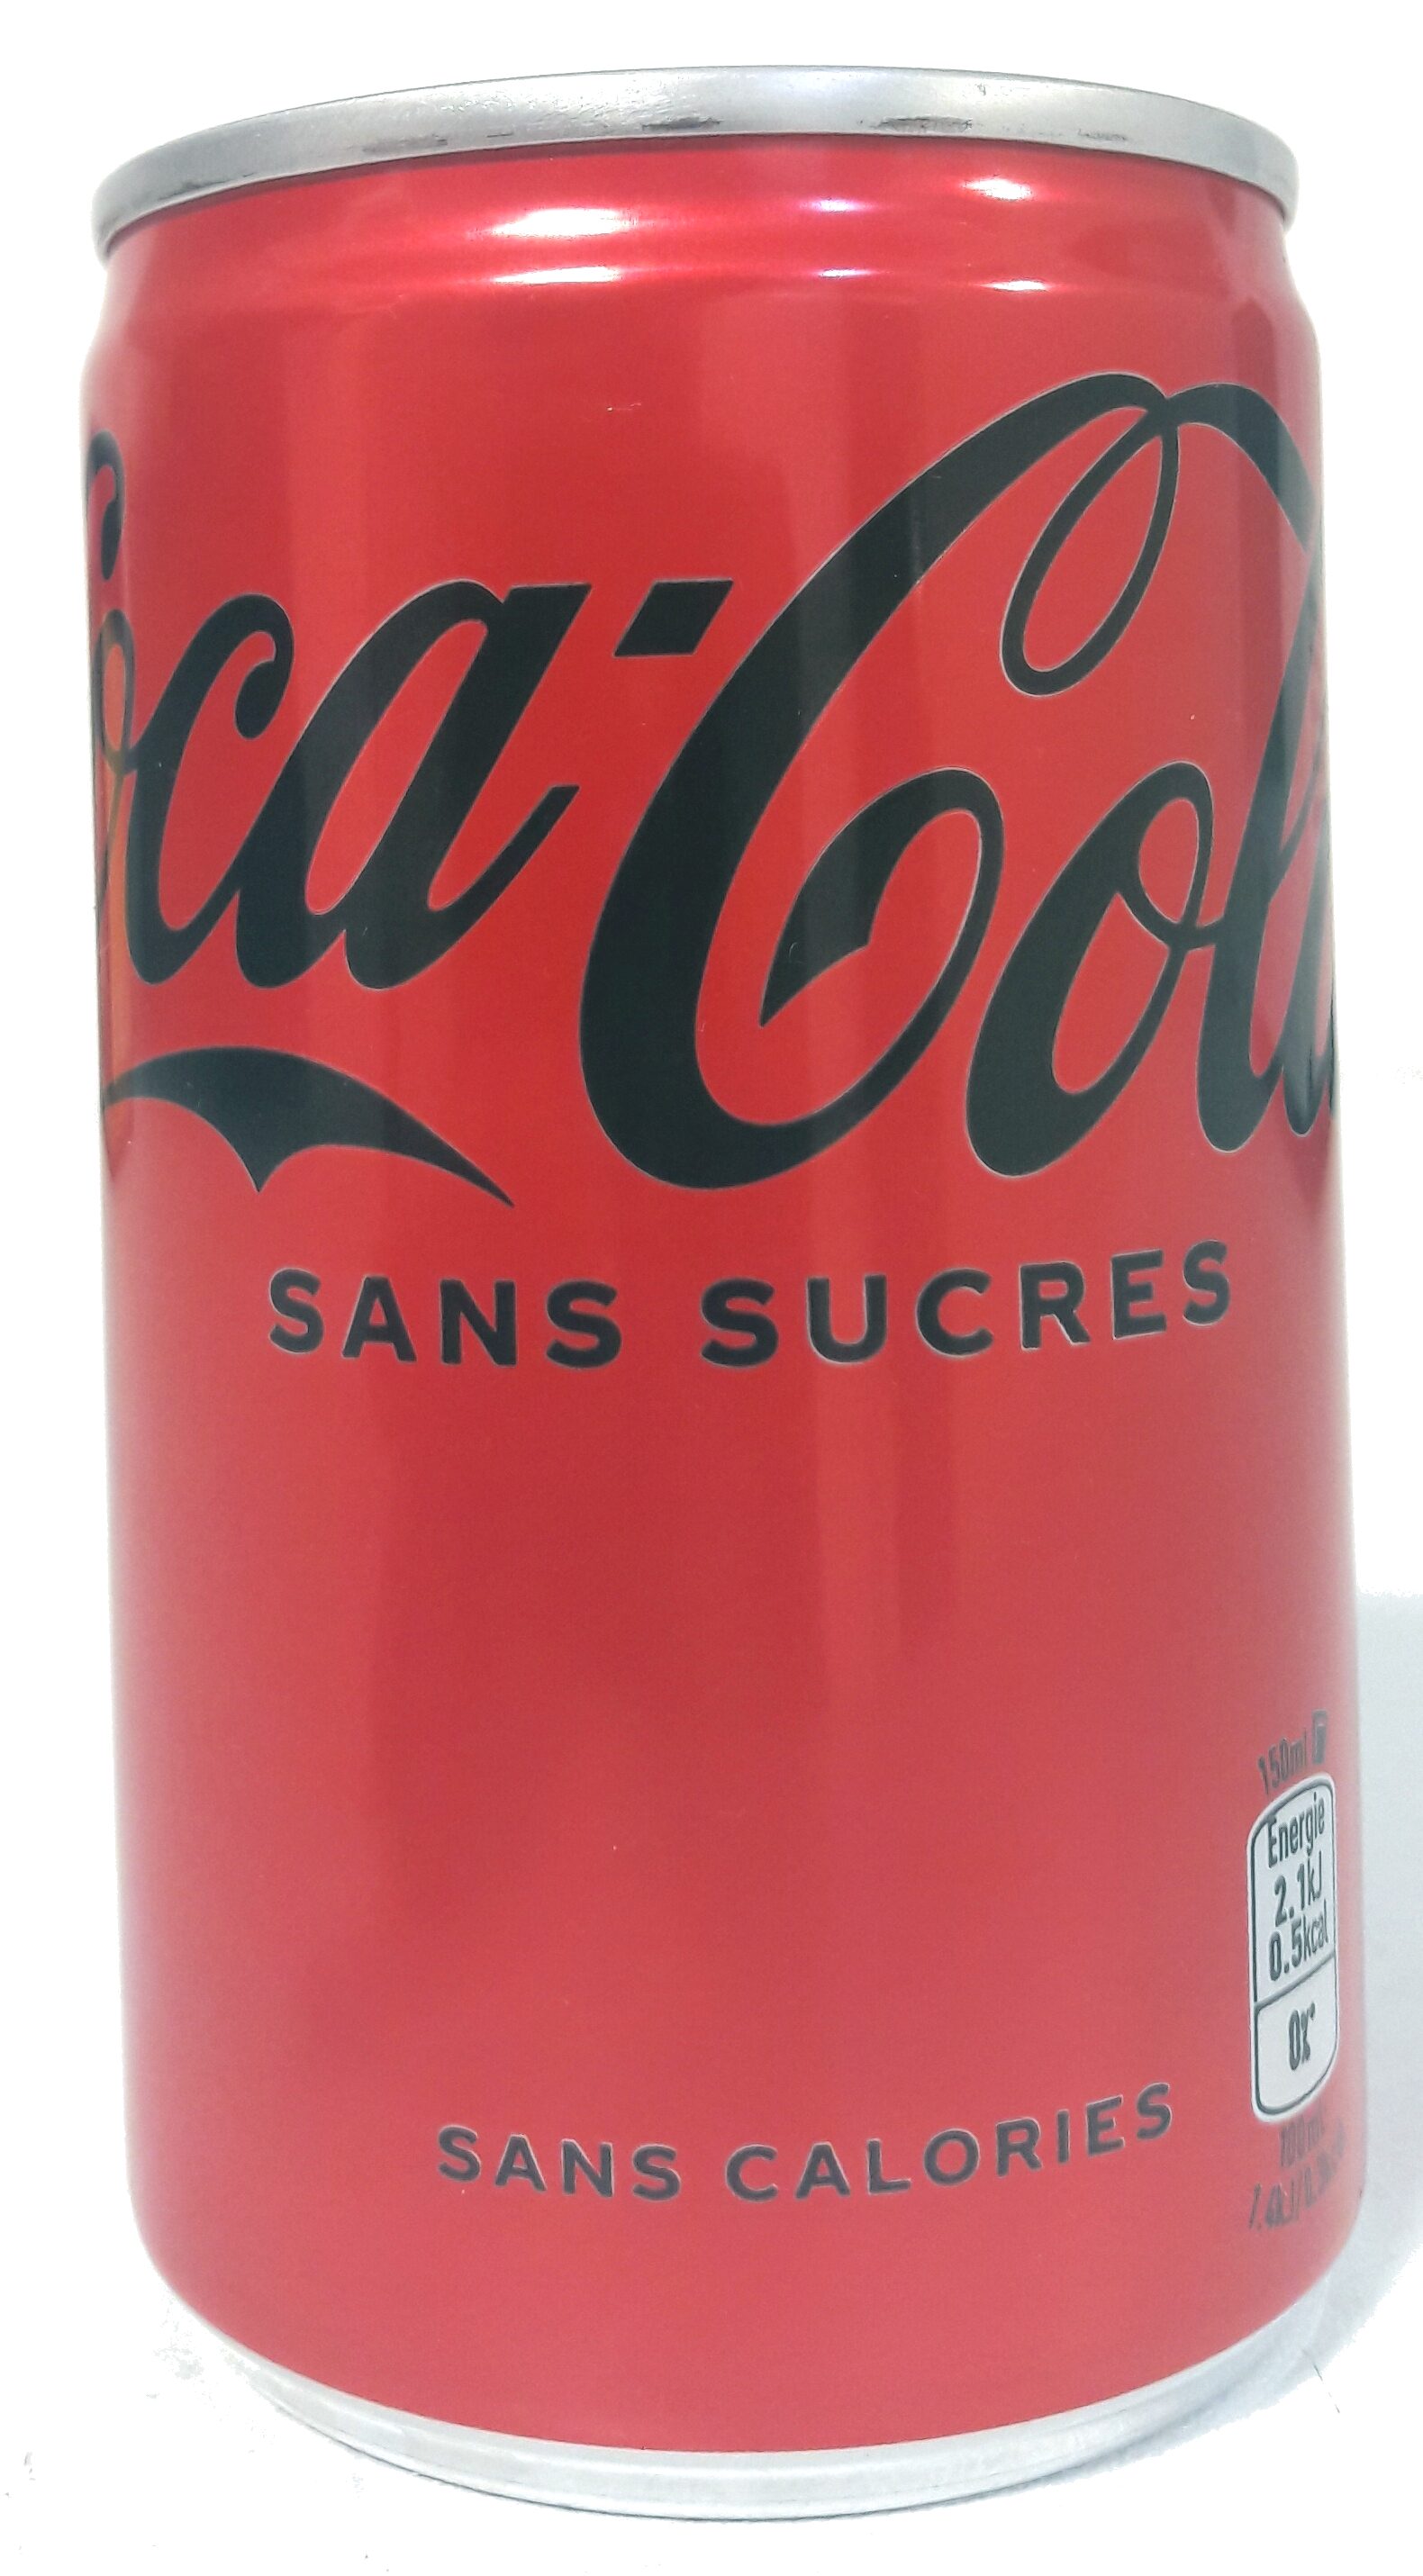 Coca-Cola sans sucres - Product - fr